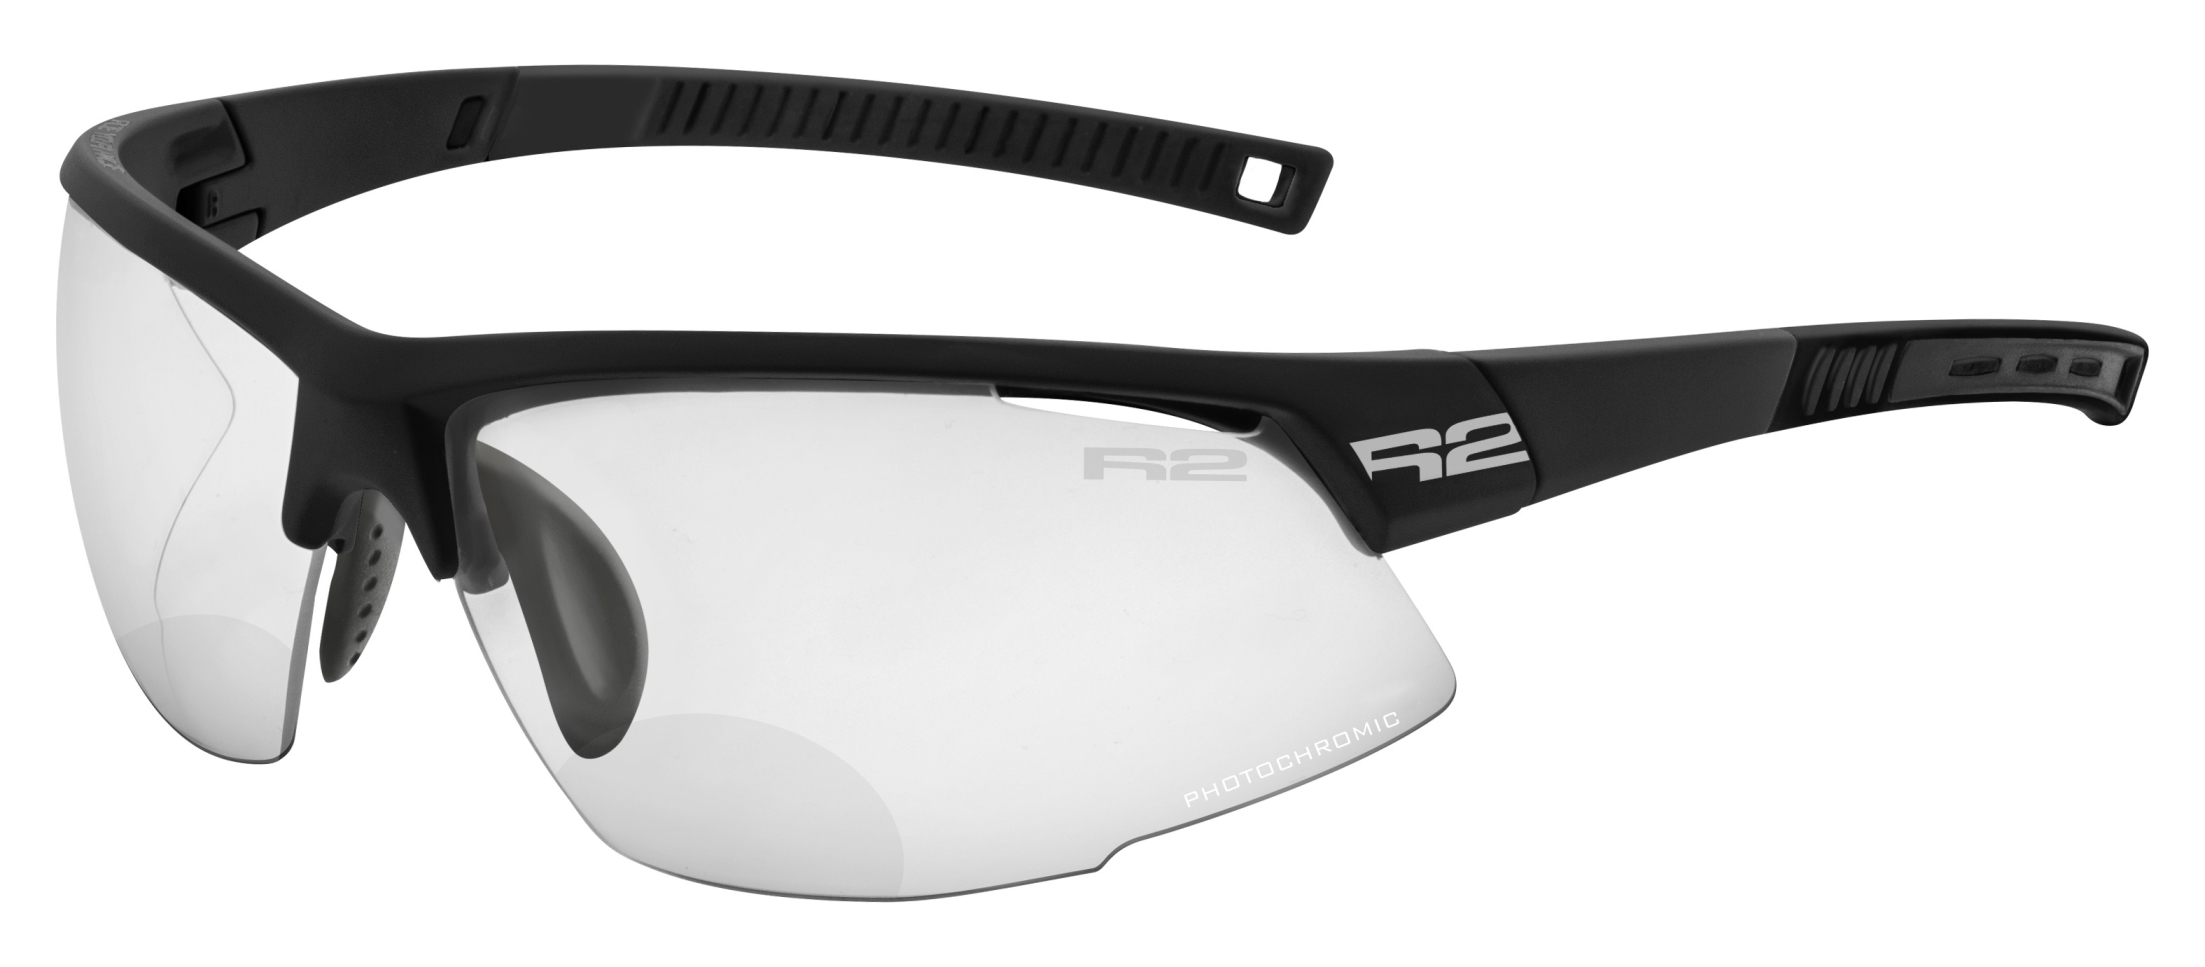 Fotochromatické dioptrické sluneční brýle  R2 RACER AT063A10/2,5